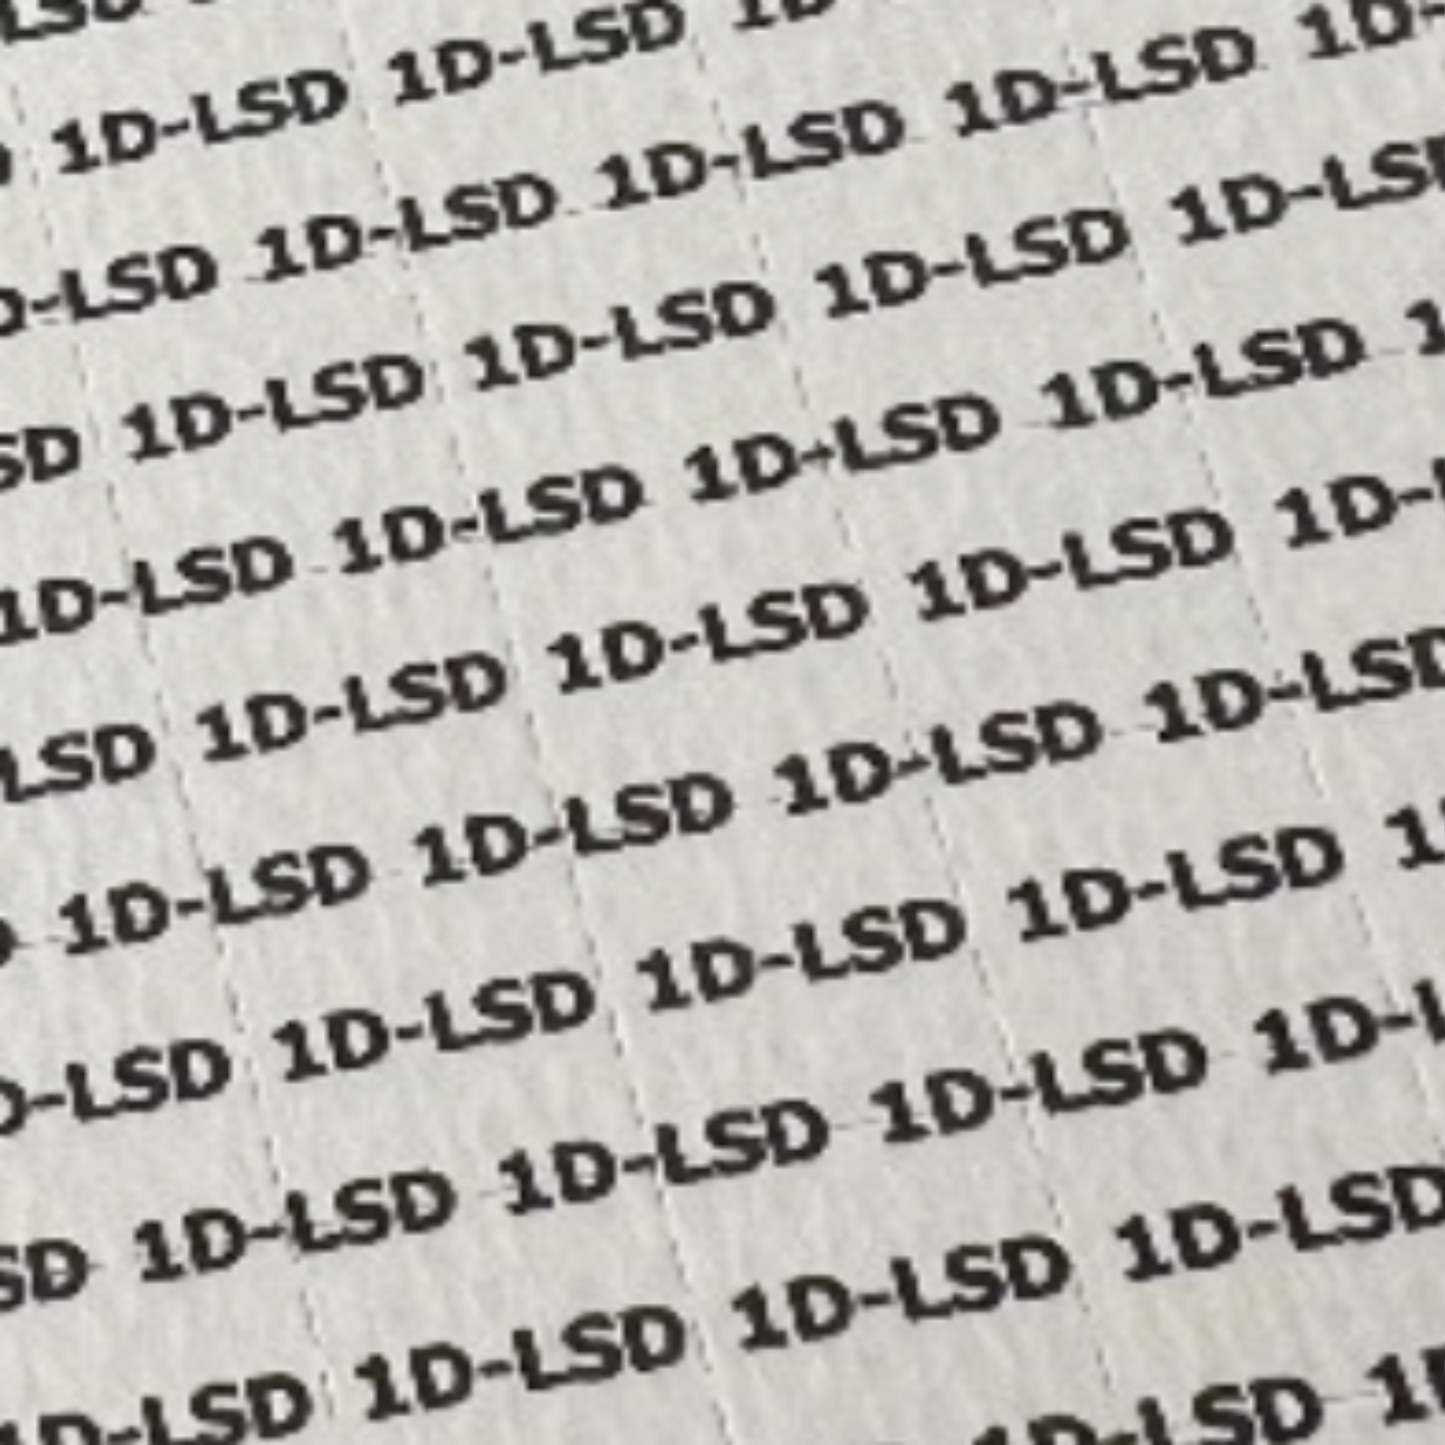 1D-LSD 150MCG Blotter: Vom Hamburger Hafen auf die Reise zu deiner psychedelischen Welt